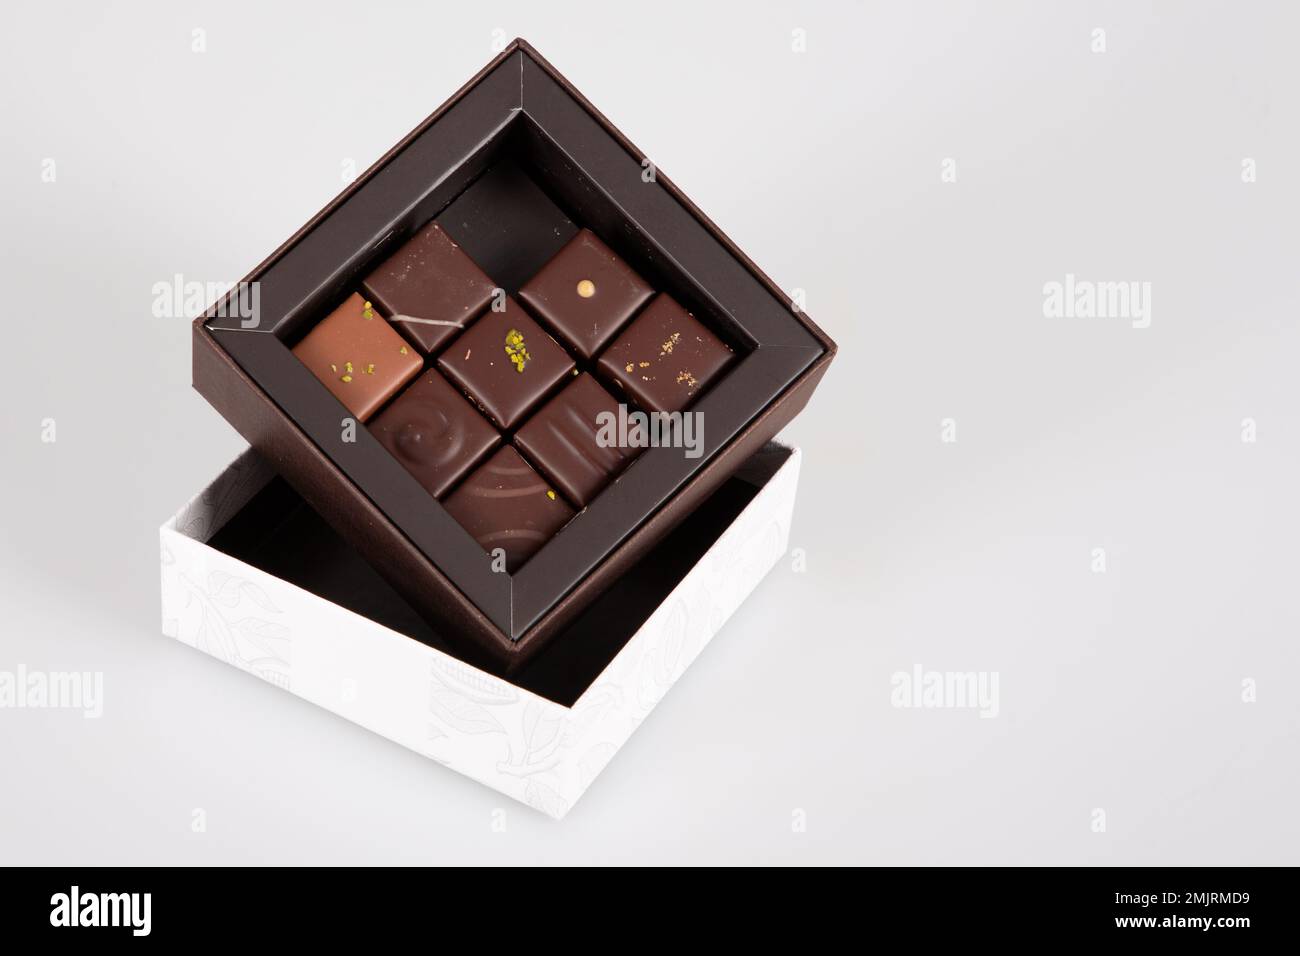 Assortiment de friandises artisanales fines de pralines au chocolat dans une petite boîte cadeau Banque D'Images